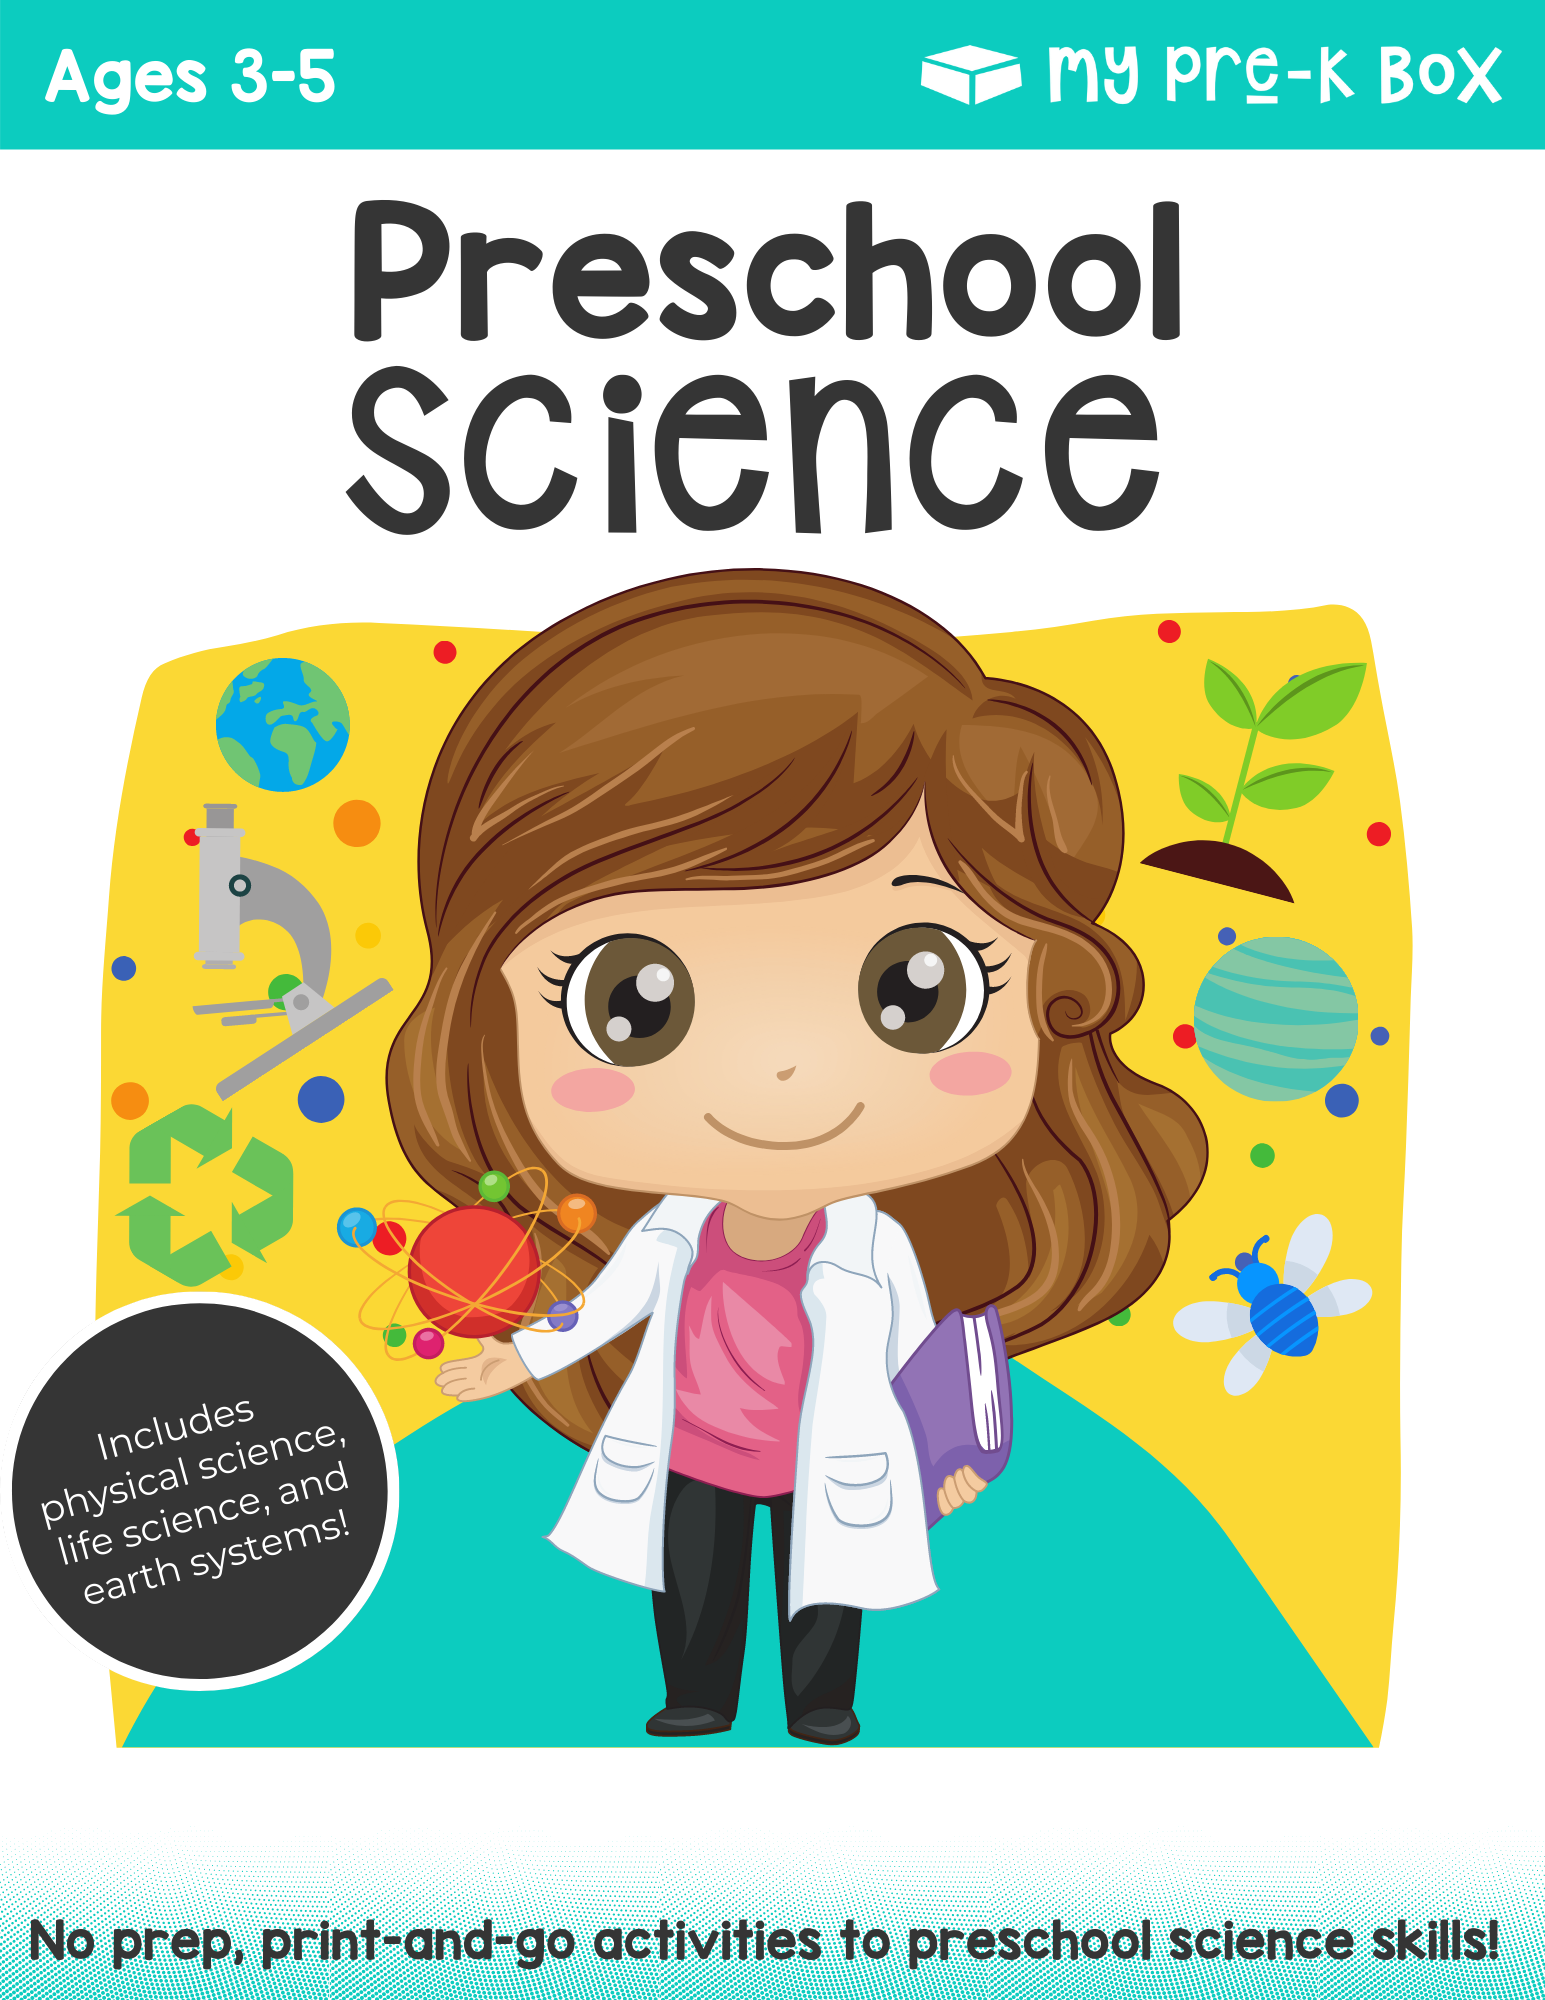 My Pre-K Box, free preschool science worksheets